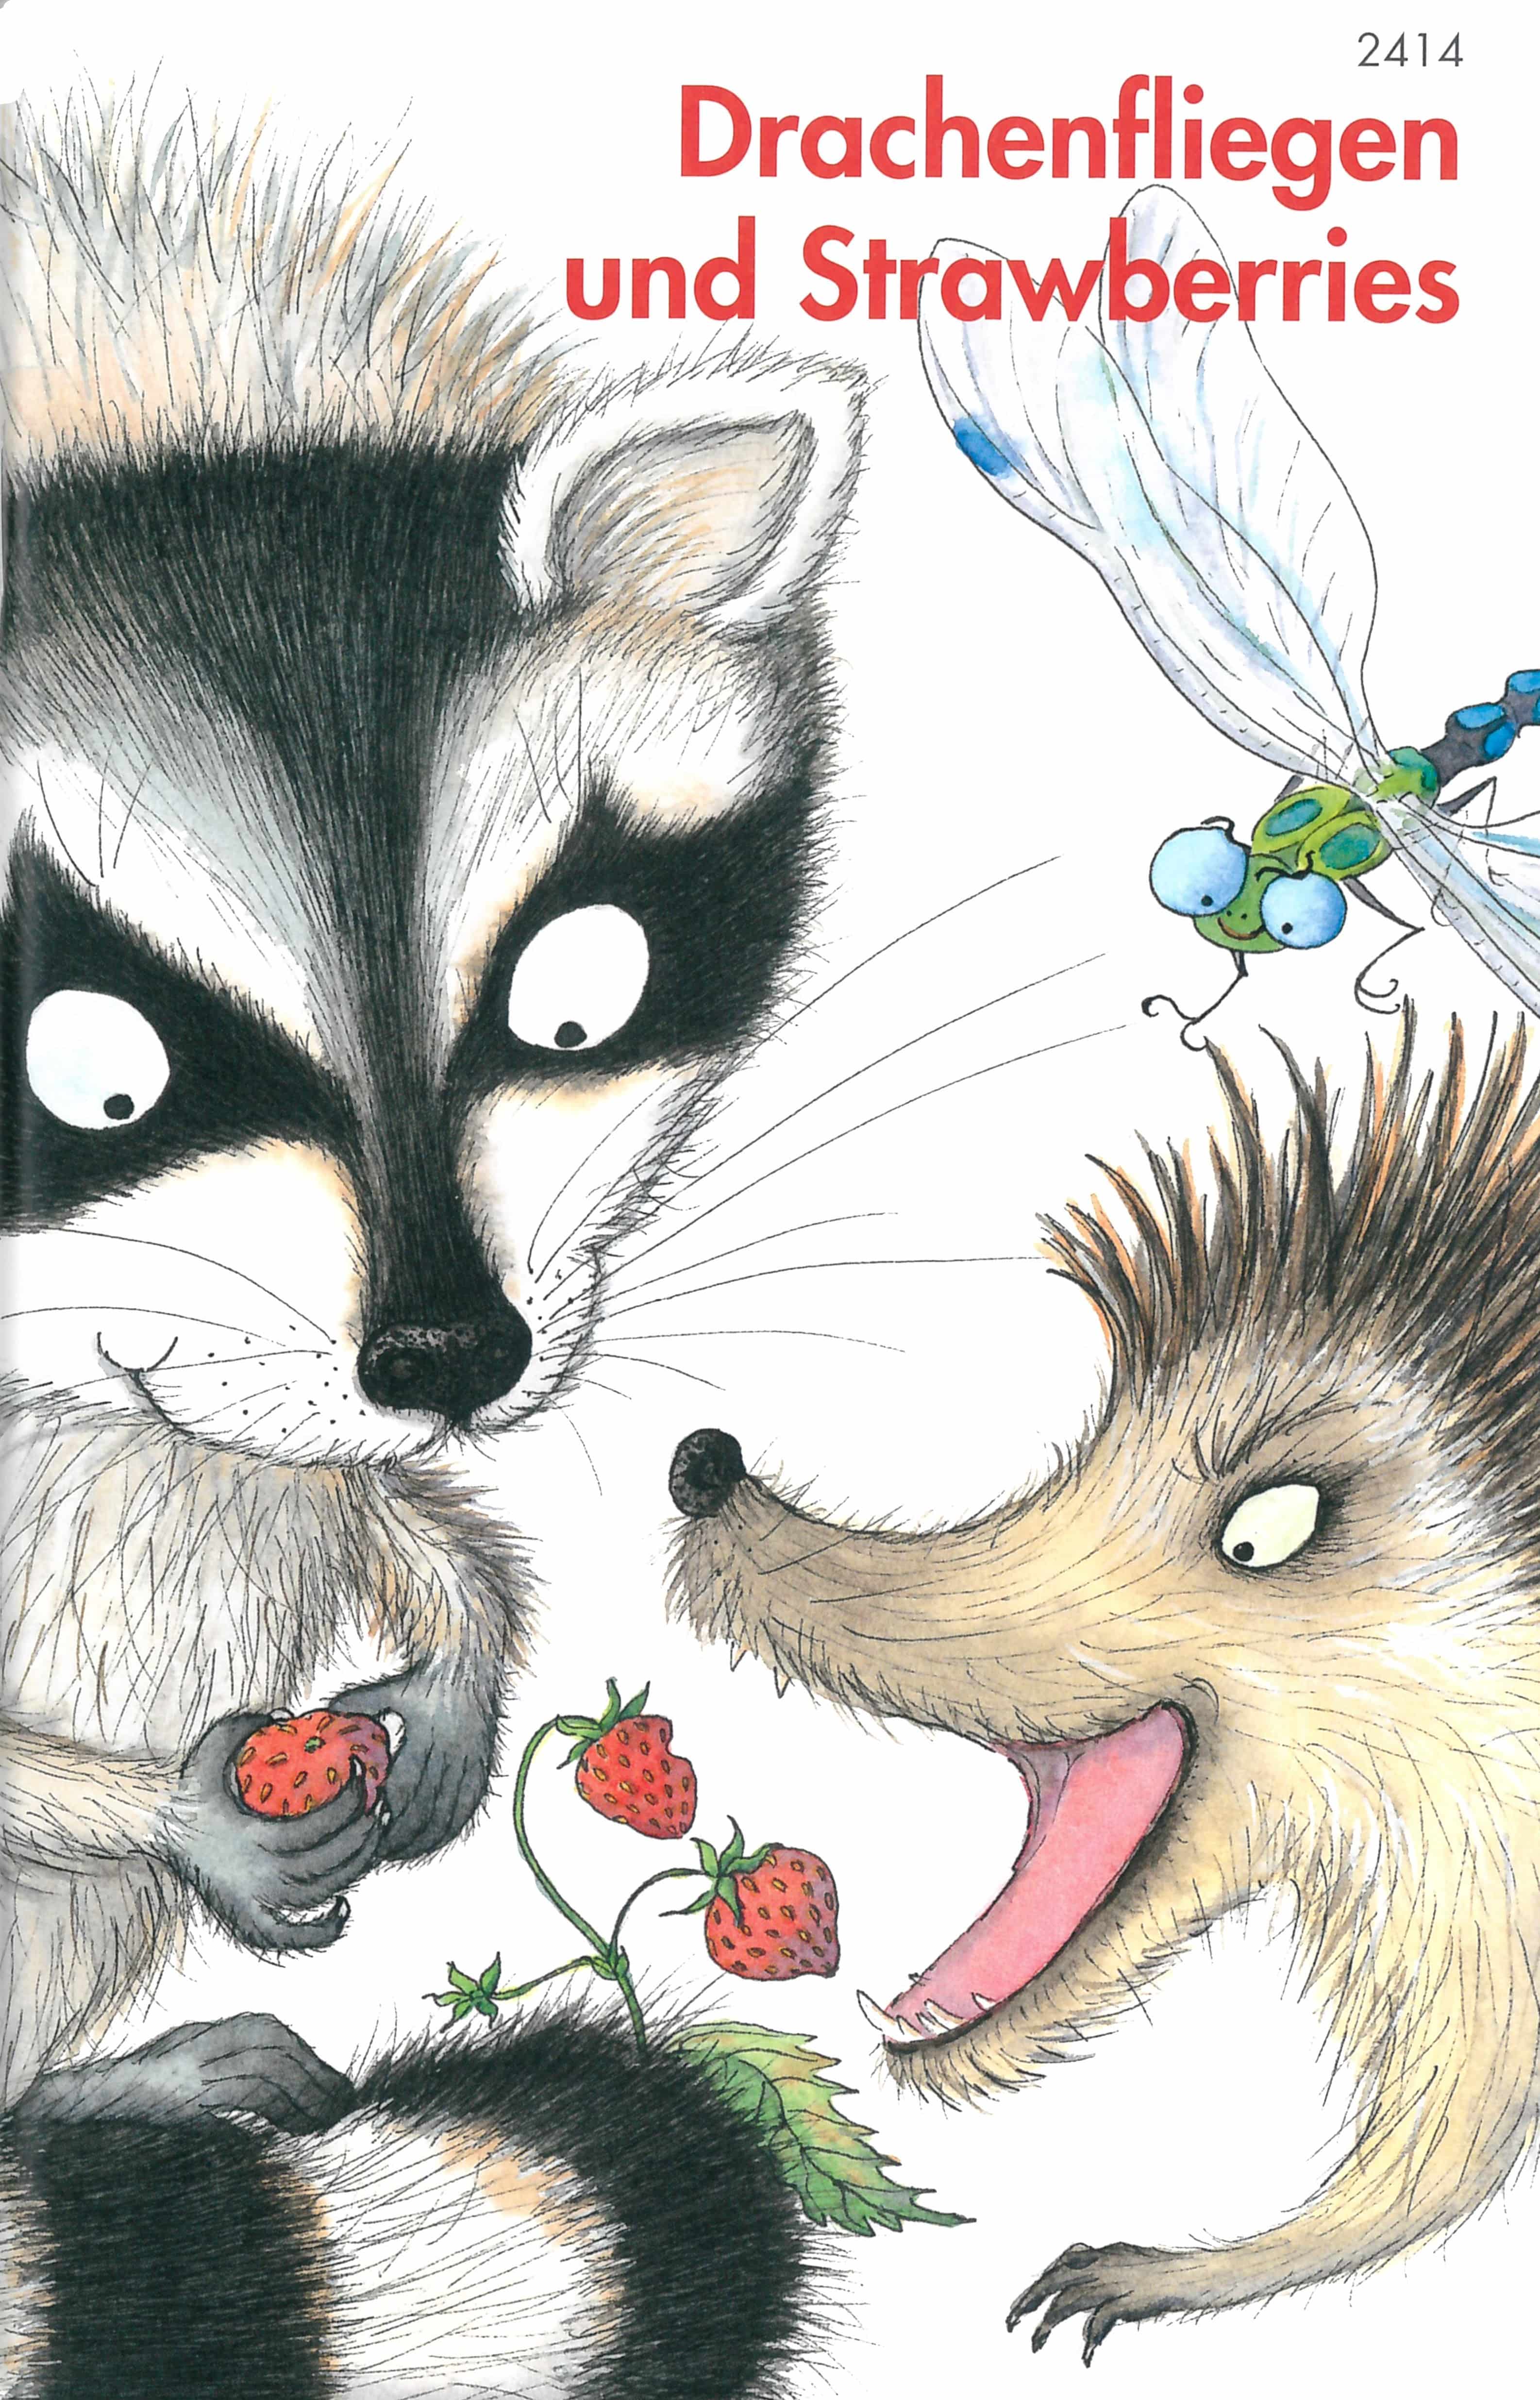 Drachenfliegen und Strawberries, ein Kinderbuch von Doris Lecher, SJW Verlag, Sprachspiele